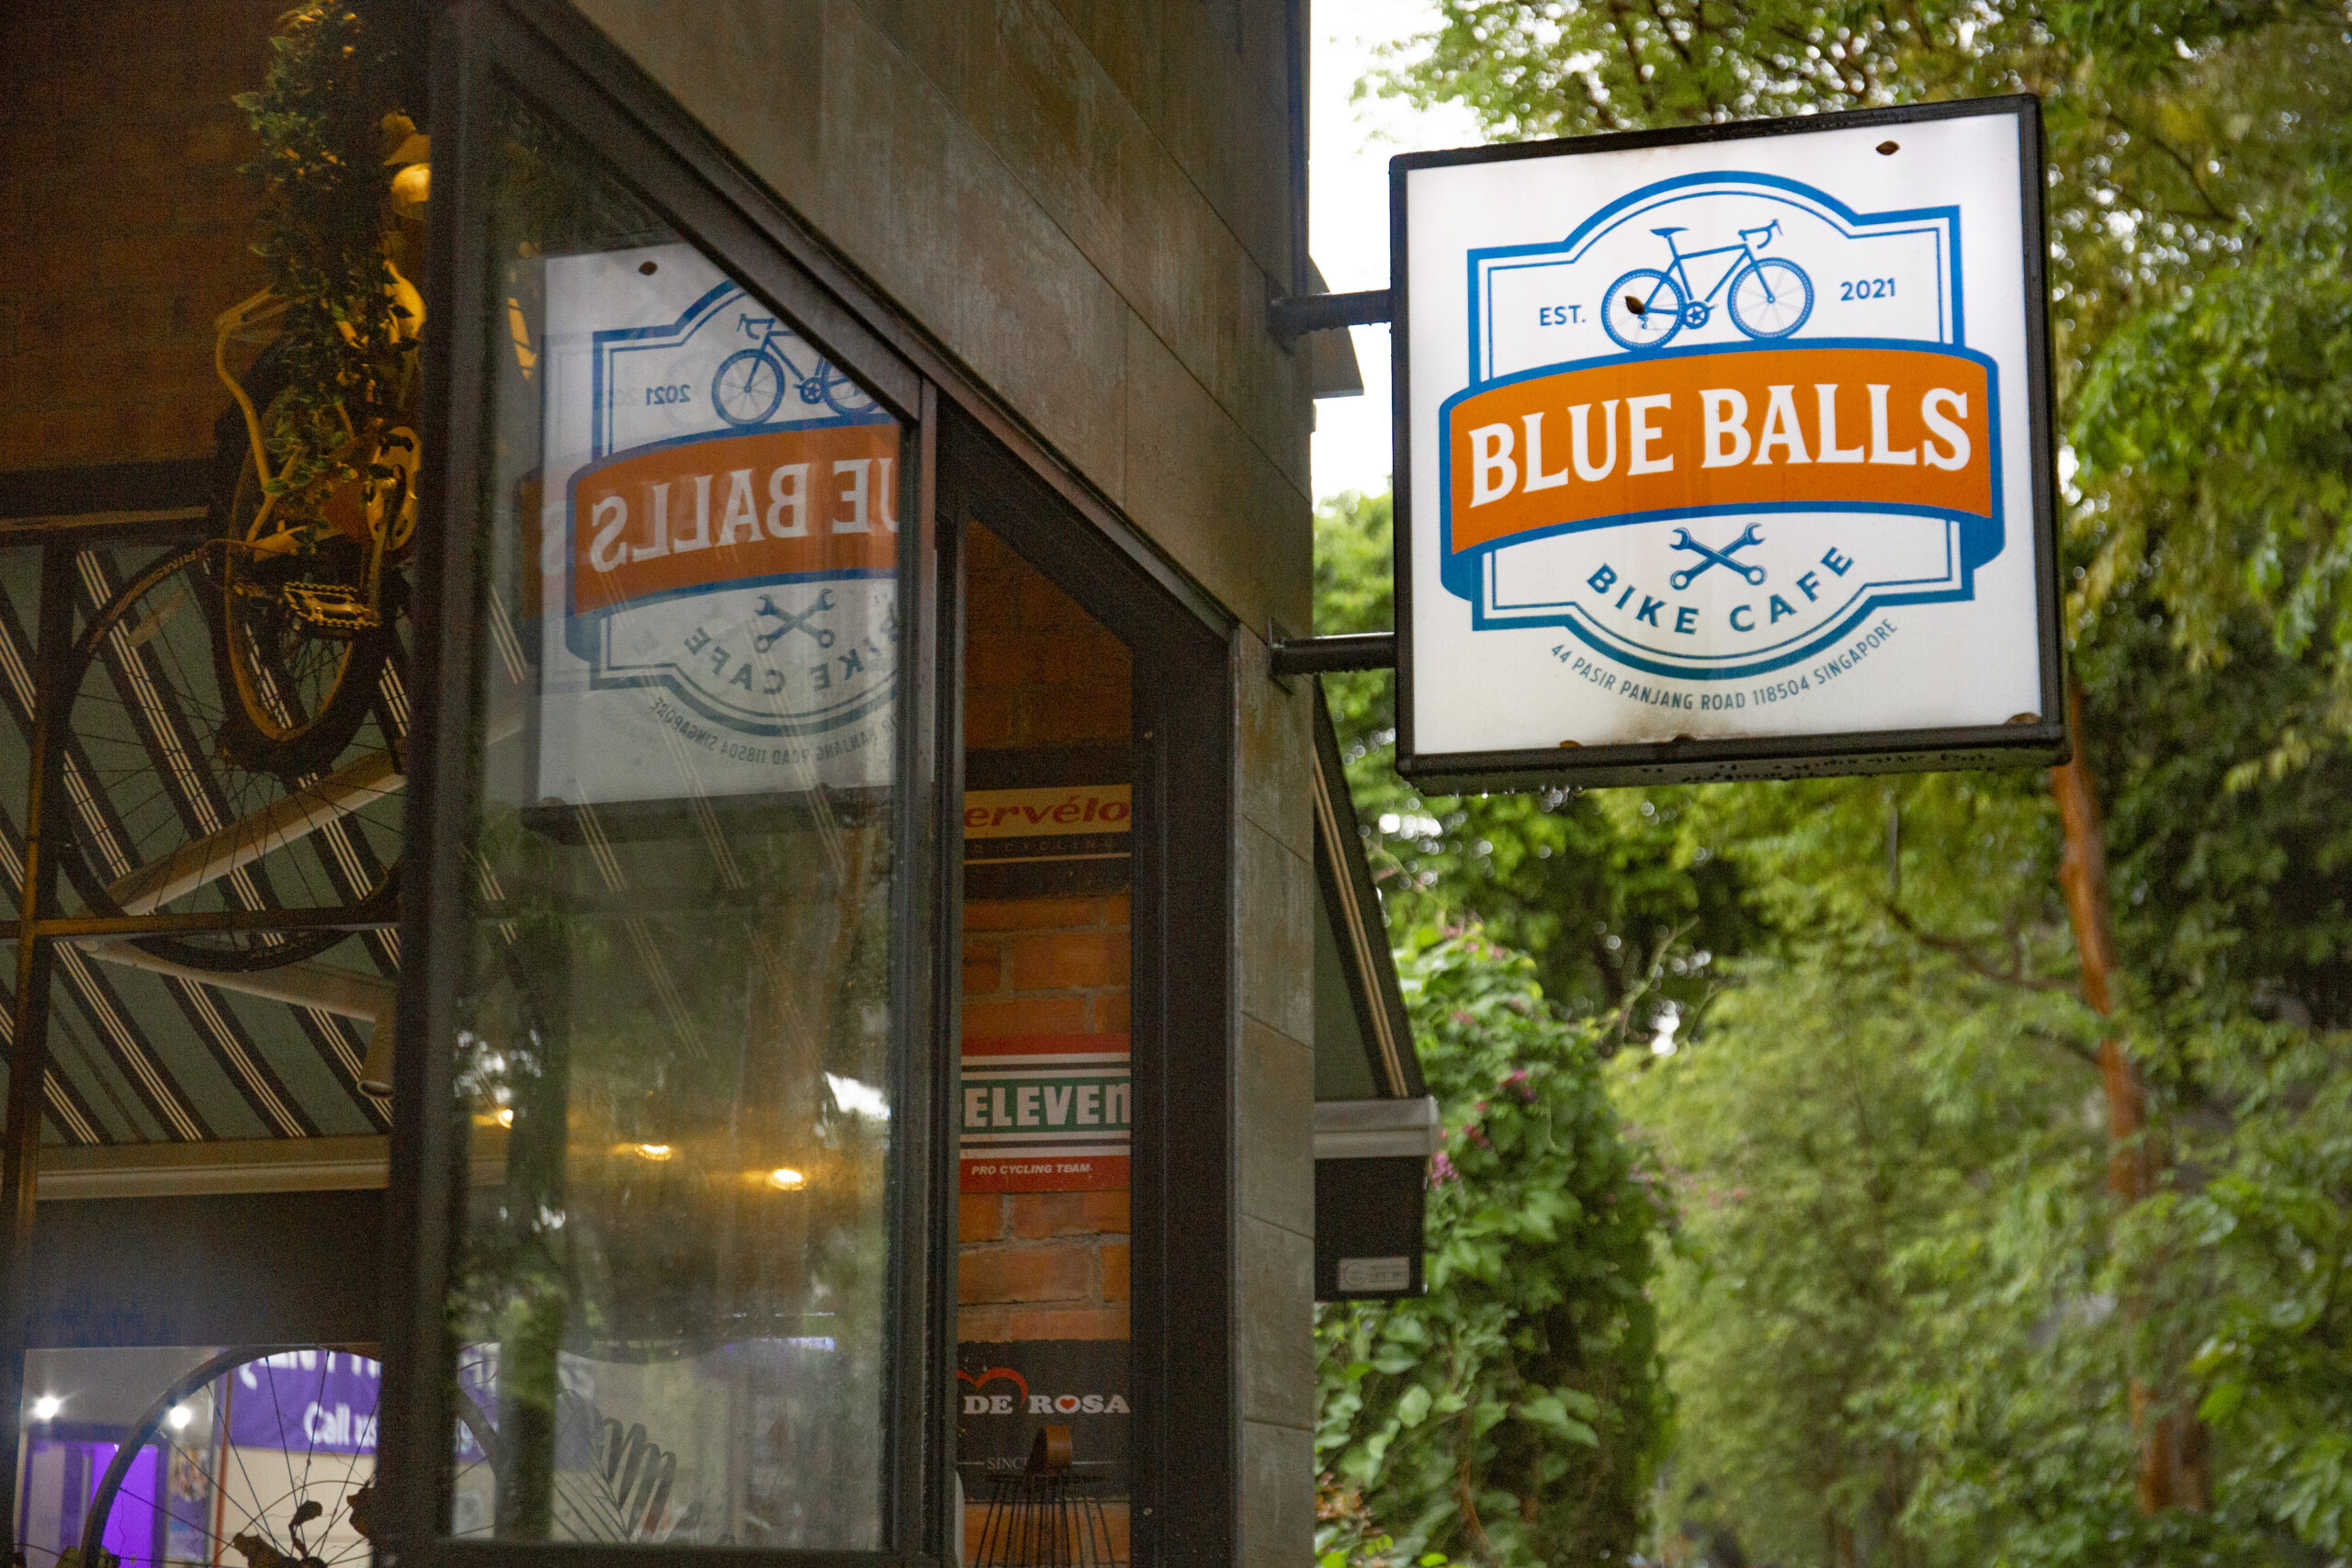 Blue Balls Bike Cafe - Blue Balls sign